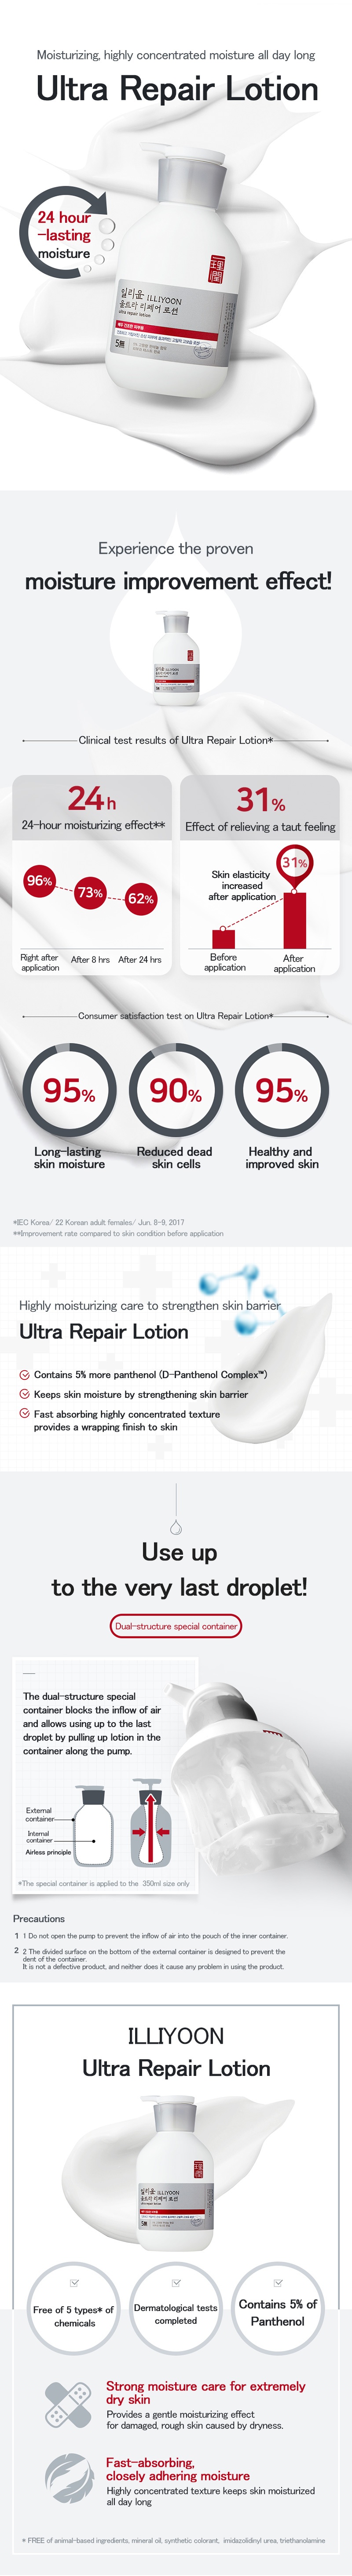 ILLIYOON Ultra Repair Lotion produit cosmétique coréen boutique en ligne malaisie chiana usa1